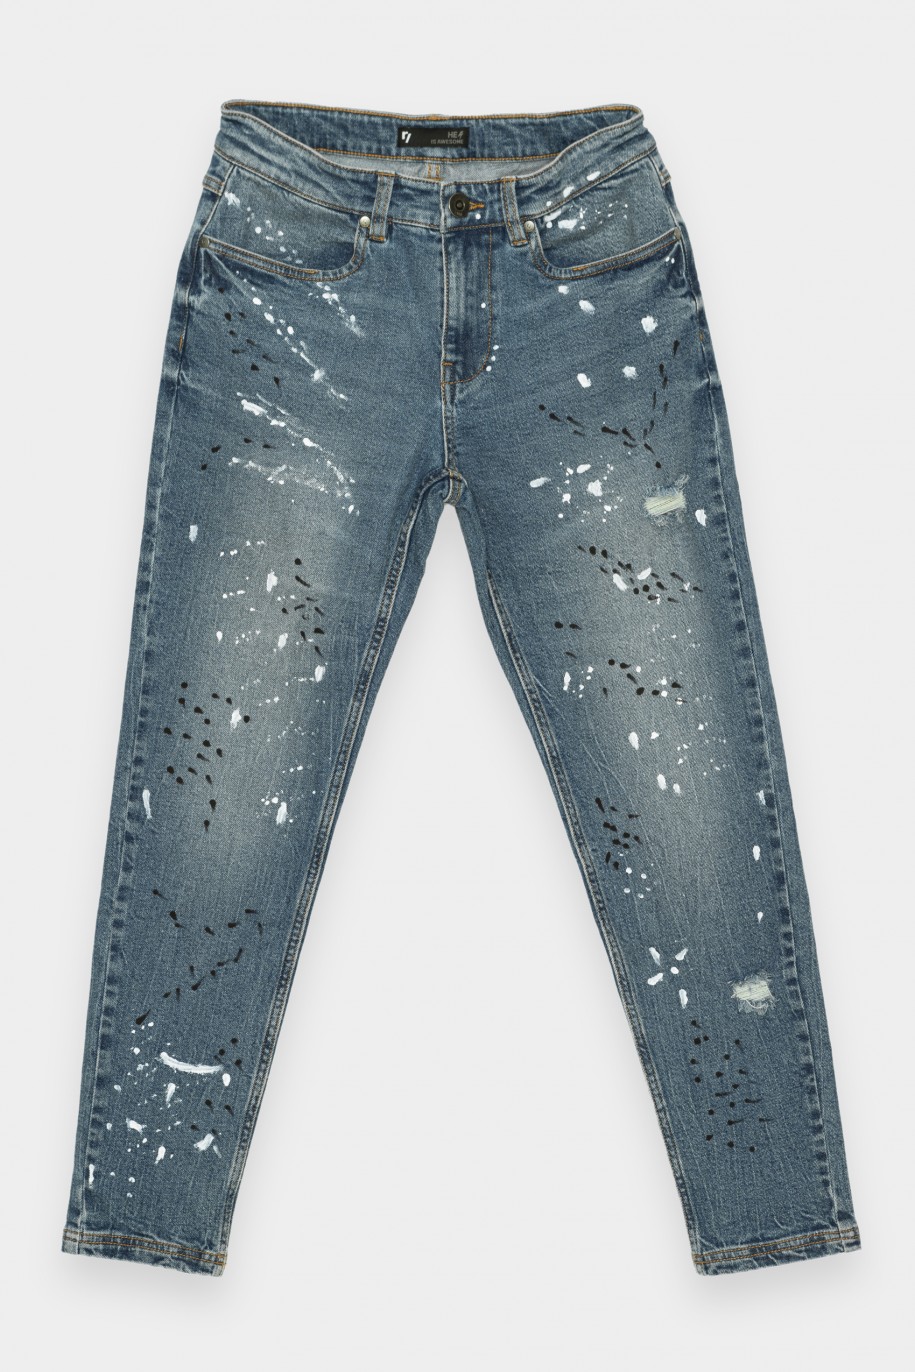 Niebieskie jeansy z efektem plam - 36509